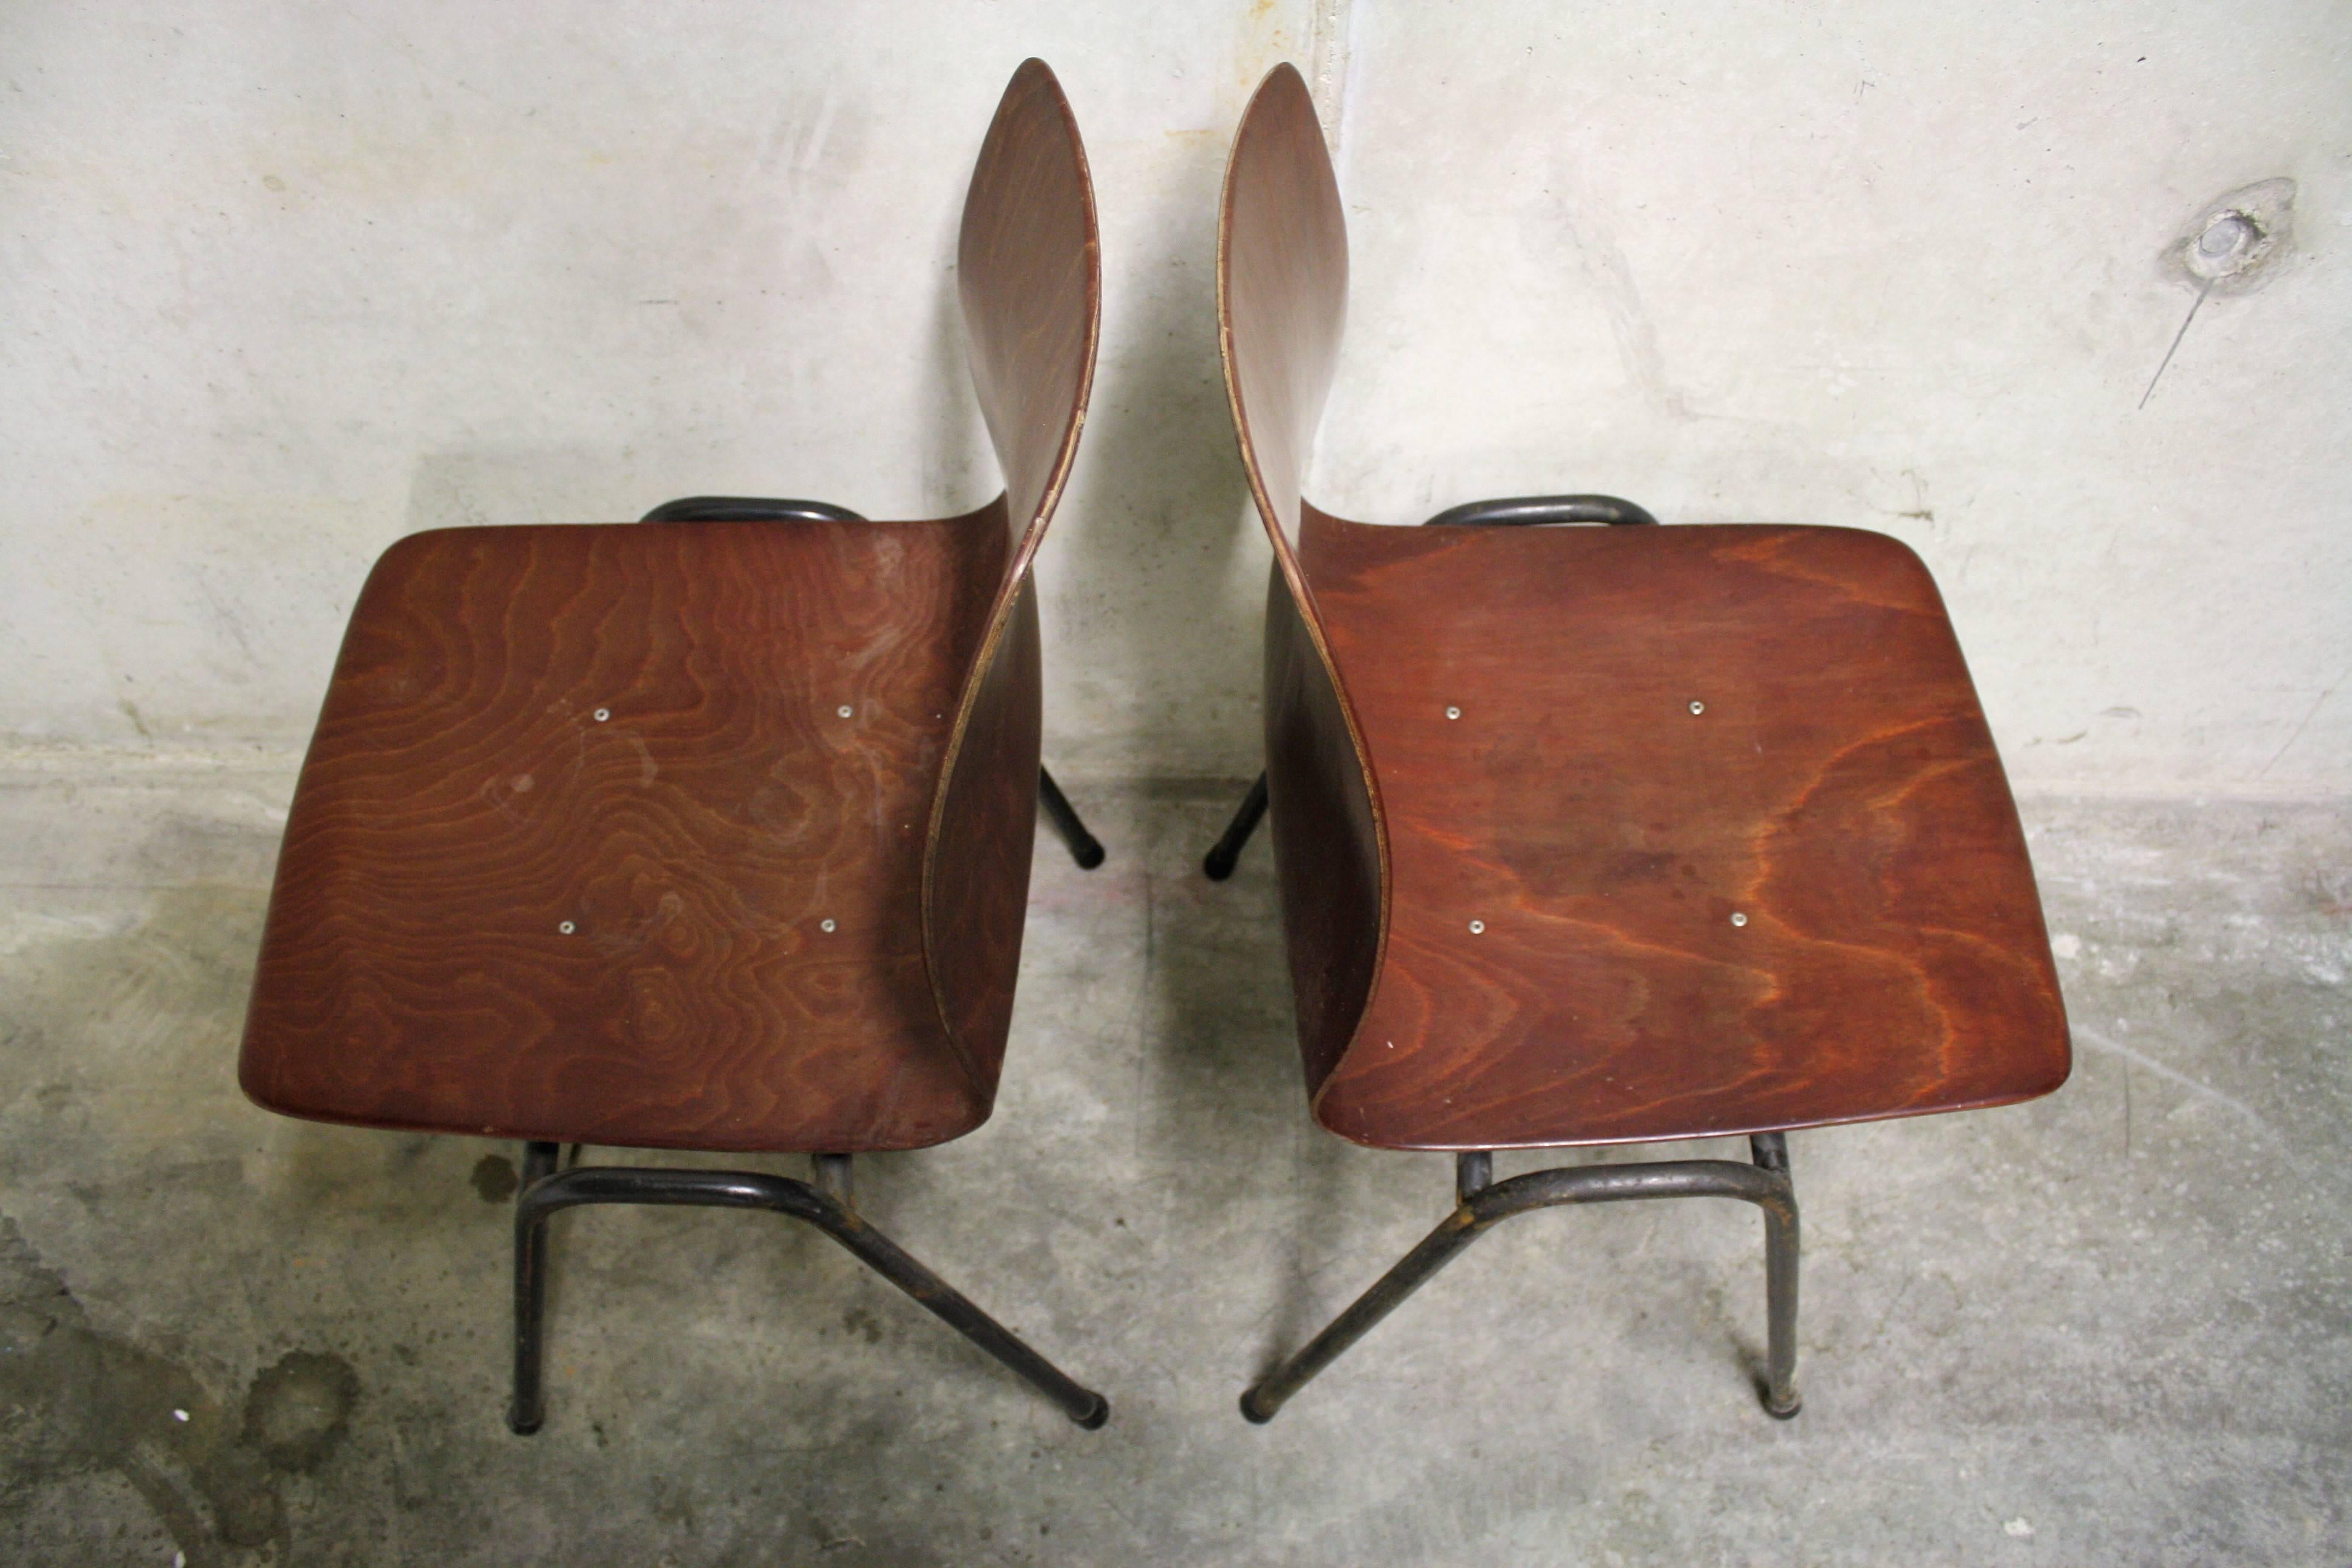 Industrial Vintage Pagholz Chairs by Galvanitas